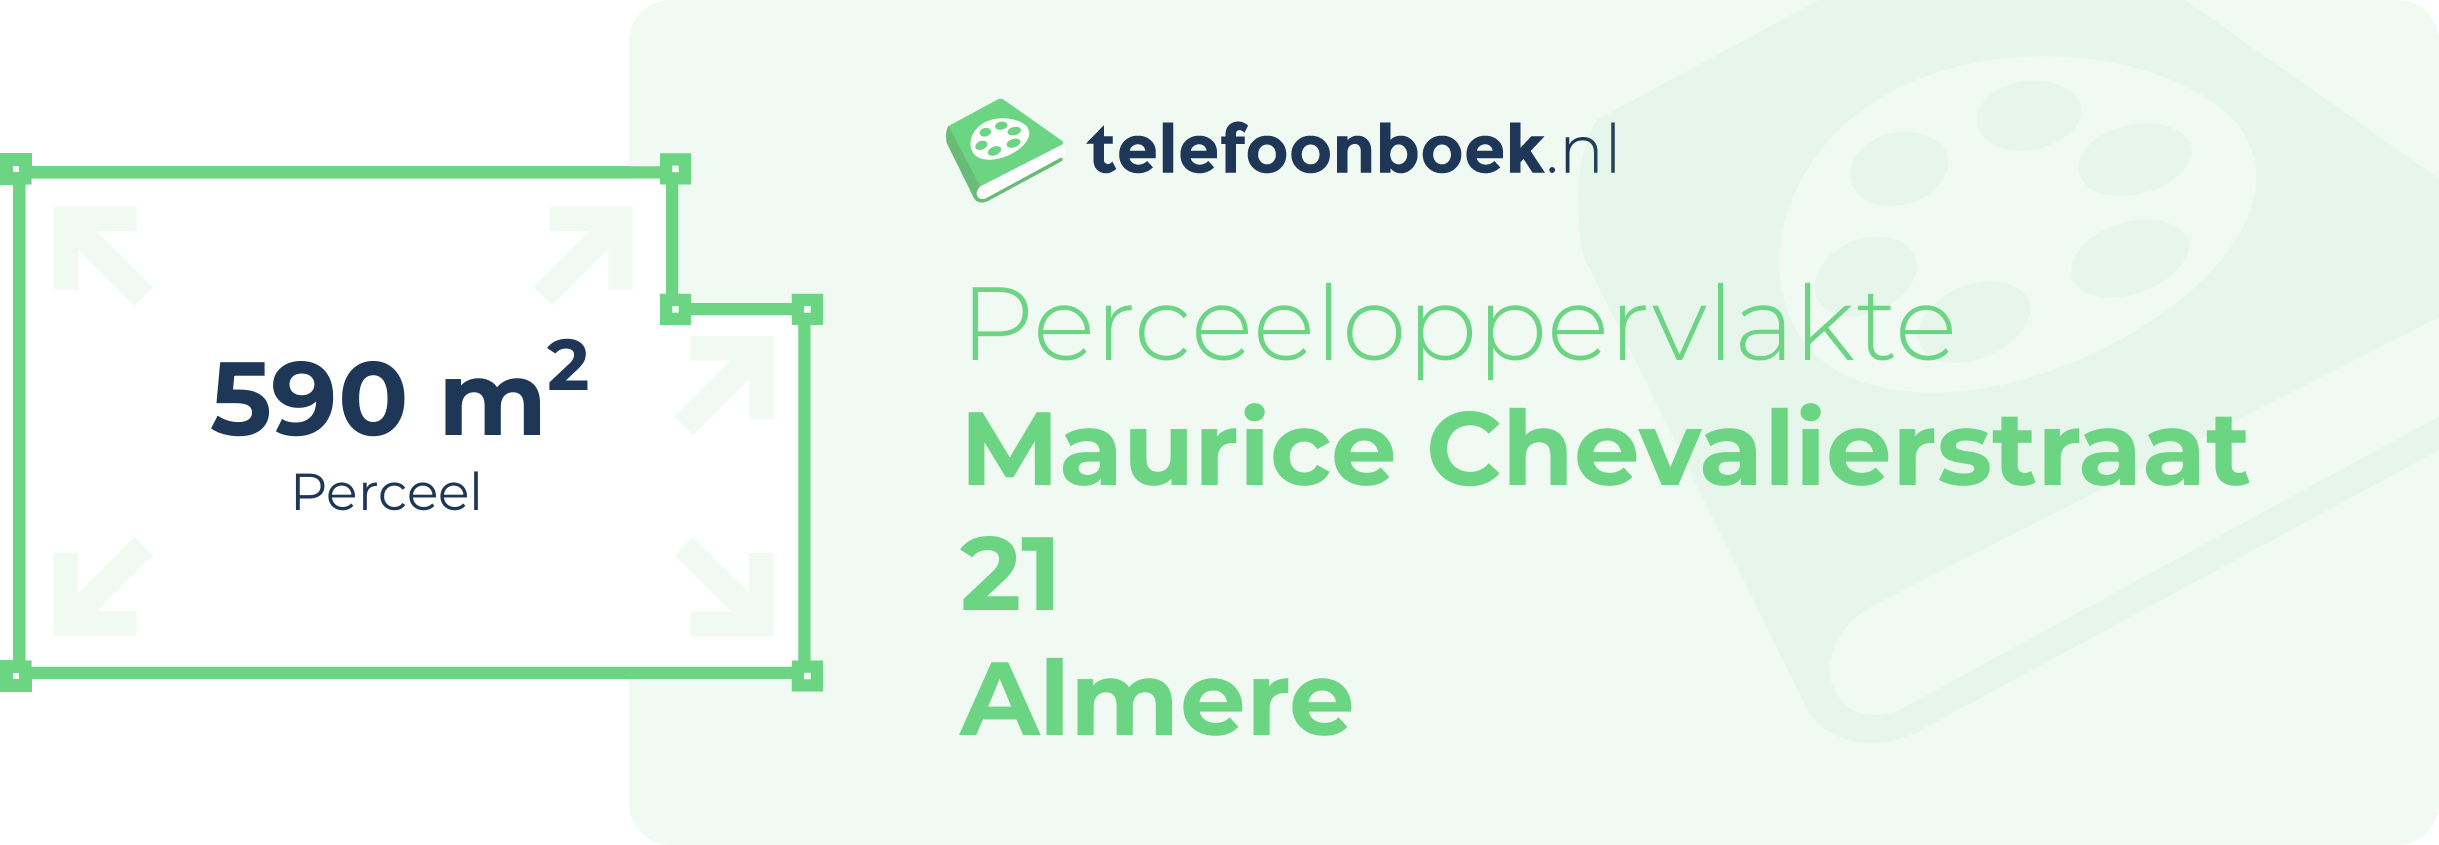 Perceeloppervlakte Maurice Chevalierstraat 21 Almere